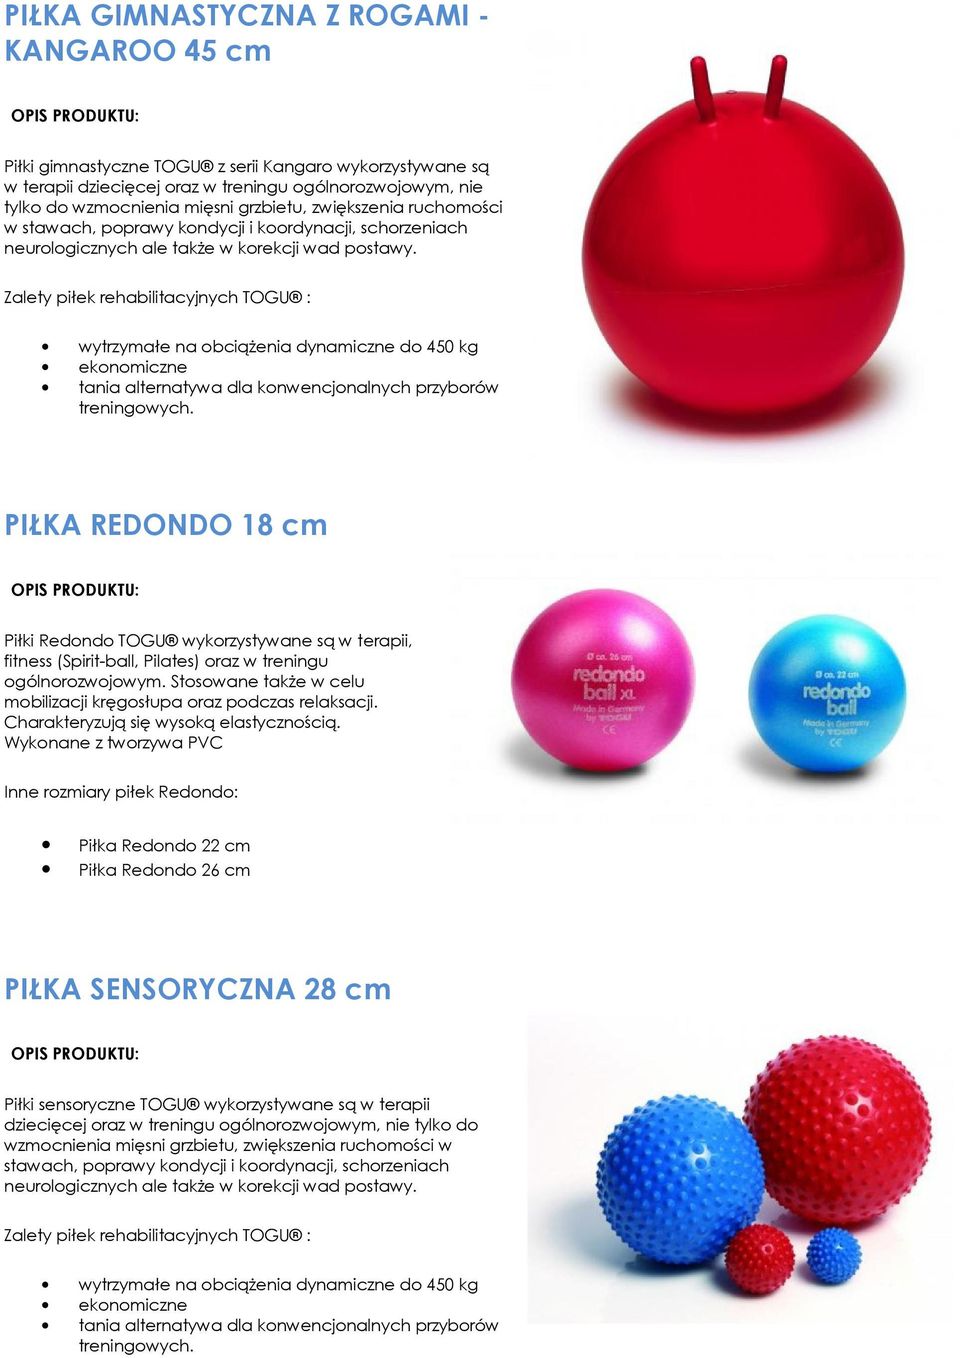 Zalety piłek rehabilitacyjnych TOGU : wytrzymałe na obciążenia dynamiczne do 450 kg tania alternatywa dla konwencjonalnych przyborów PIŁKA REDONDO 18 cm Piłki Redondo TOGU wykorzystywane są w